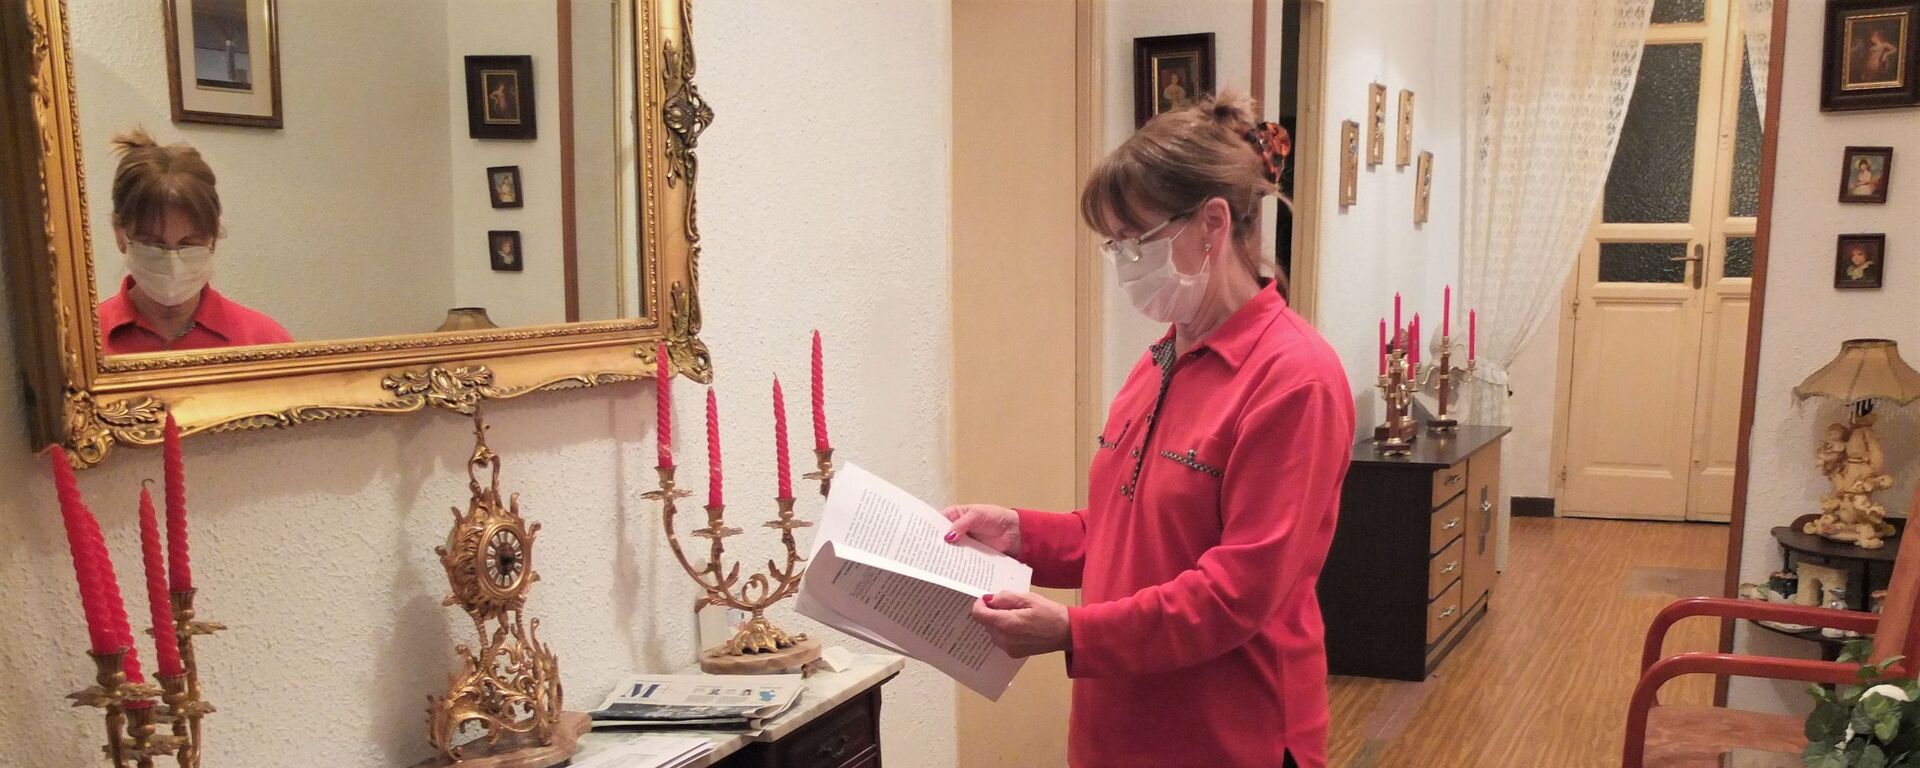 Julia Lucas, vecina del Palacio de la Infanta Carlota, en el centro de Madrid, mirando unos documentos sobre el desalojo - Sputnik Mundo, 1920, 01.12.2020